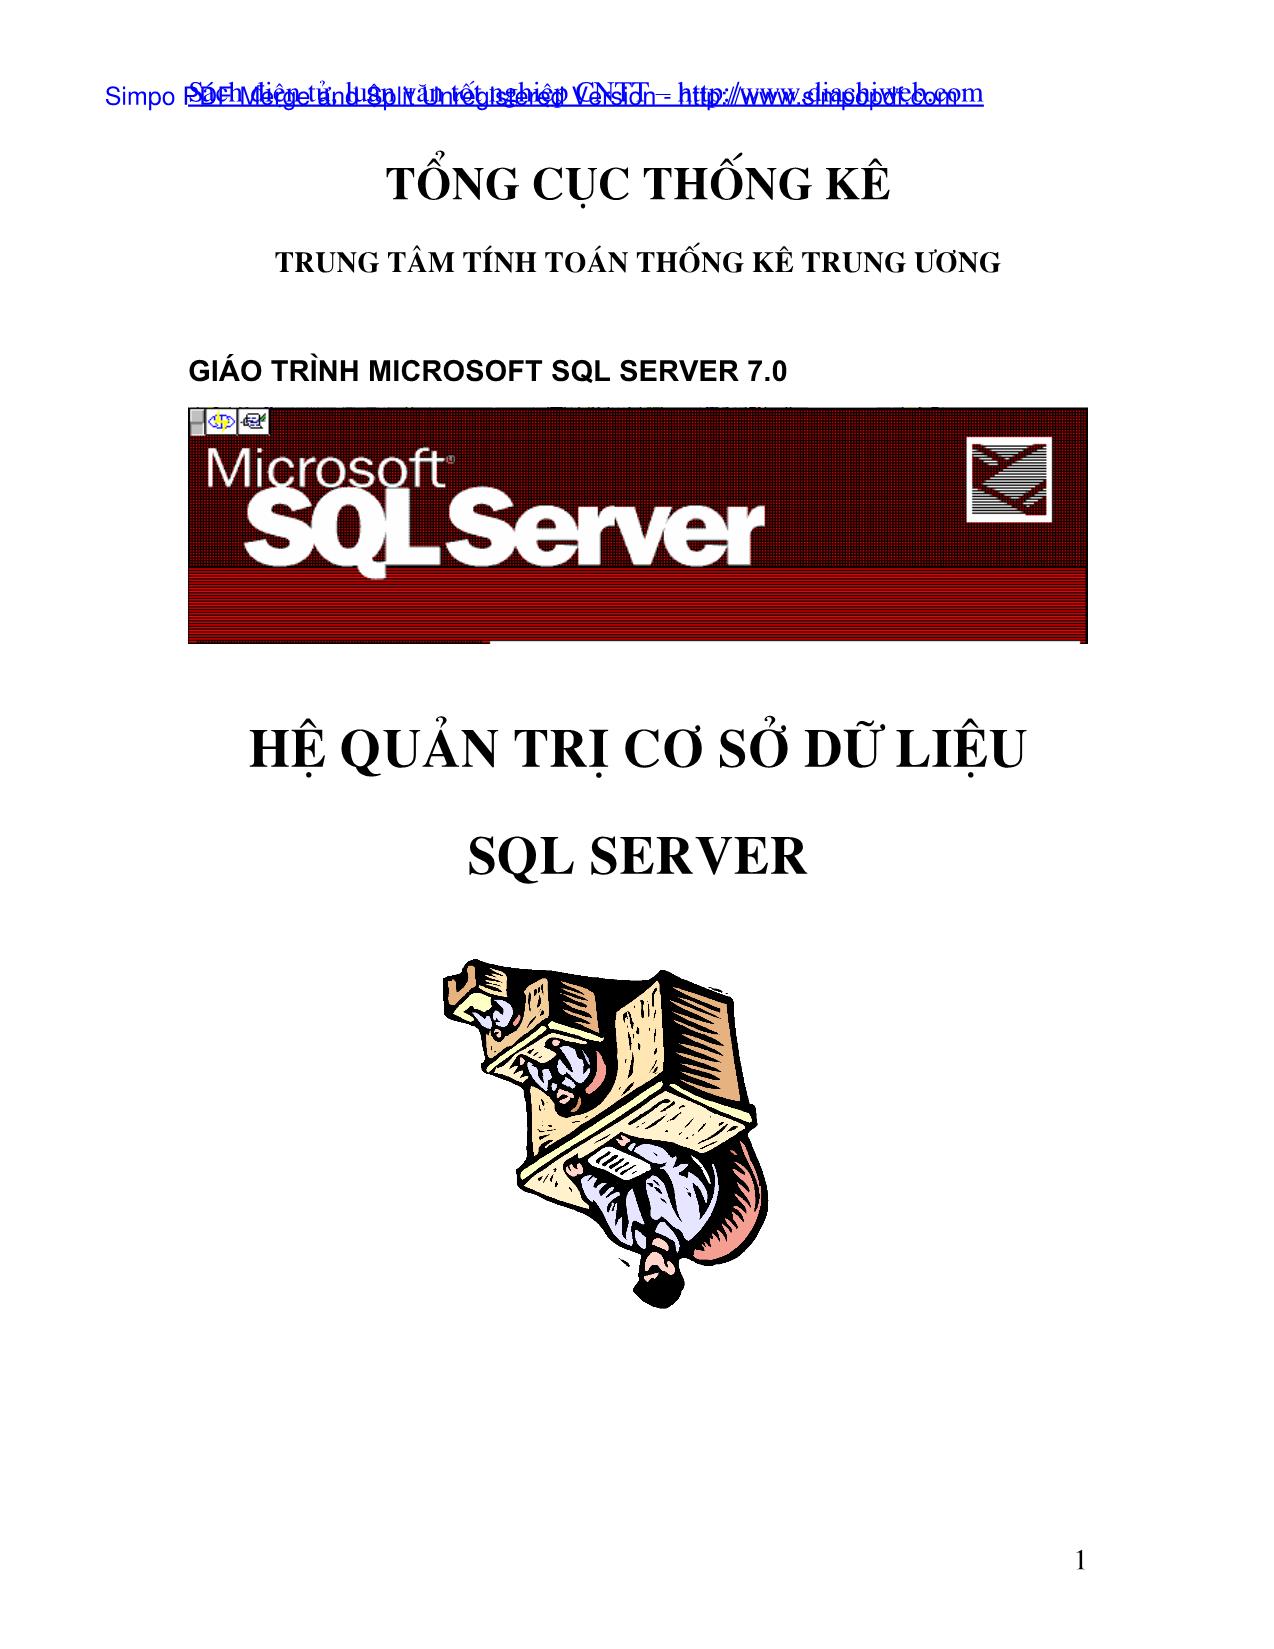 Giáo trình Hệ quản trị cơ sở dữ liệu SQL Server trang 1